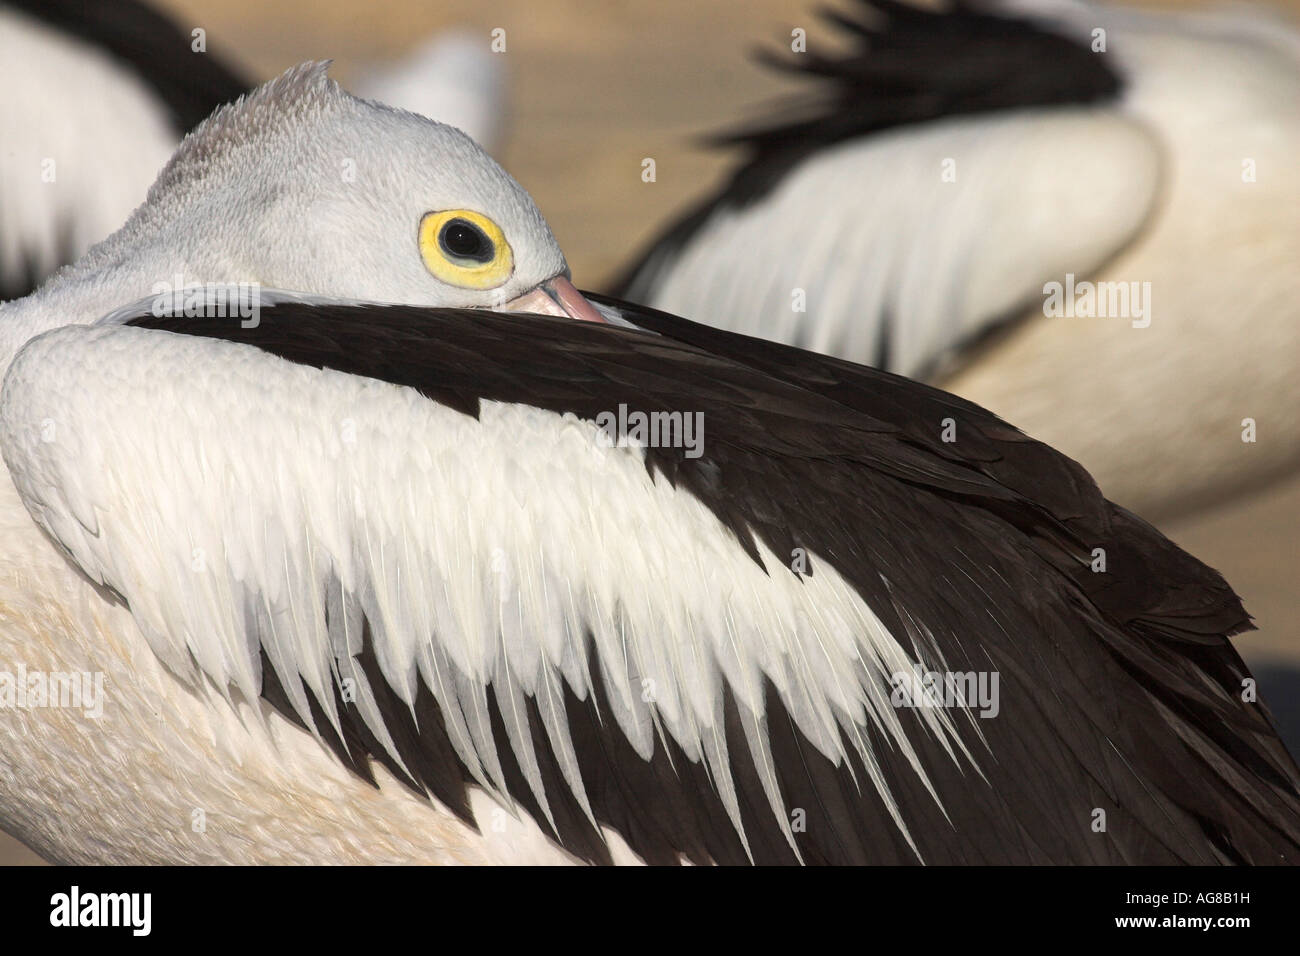 Australian pelican, pelecanus conspicillatus, adult at rest Stock Photo